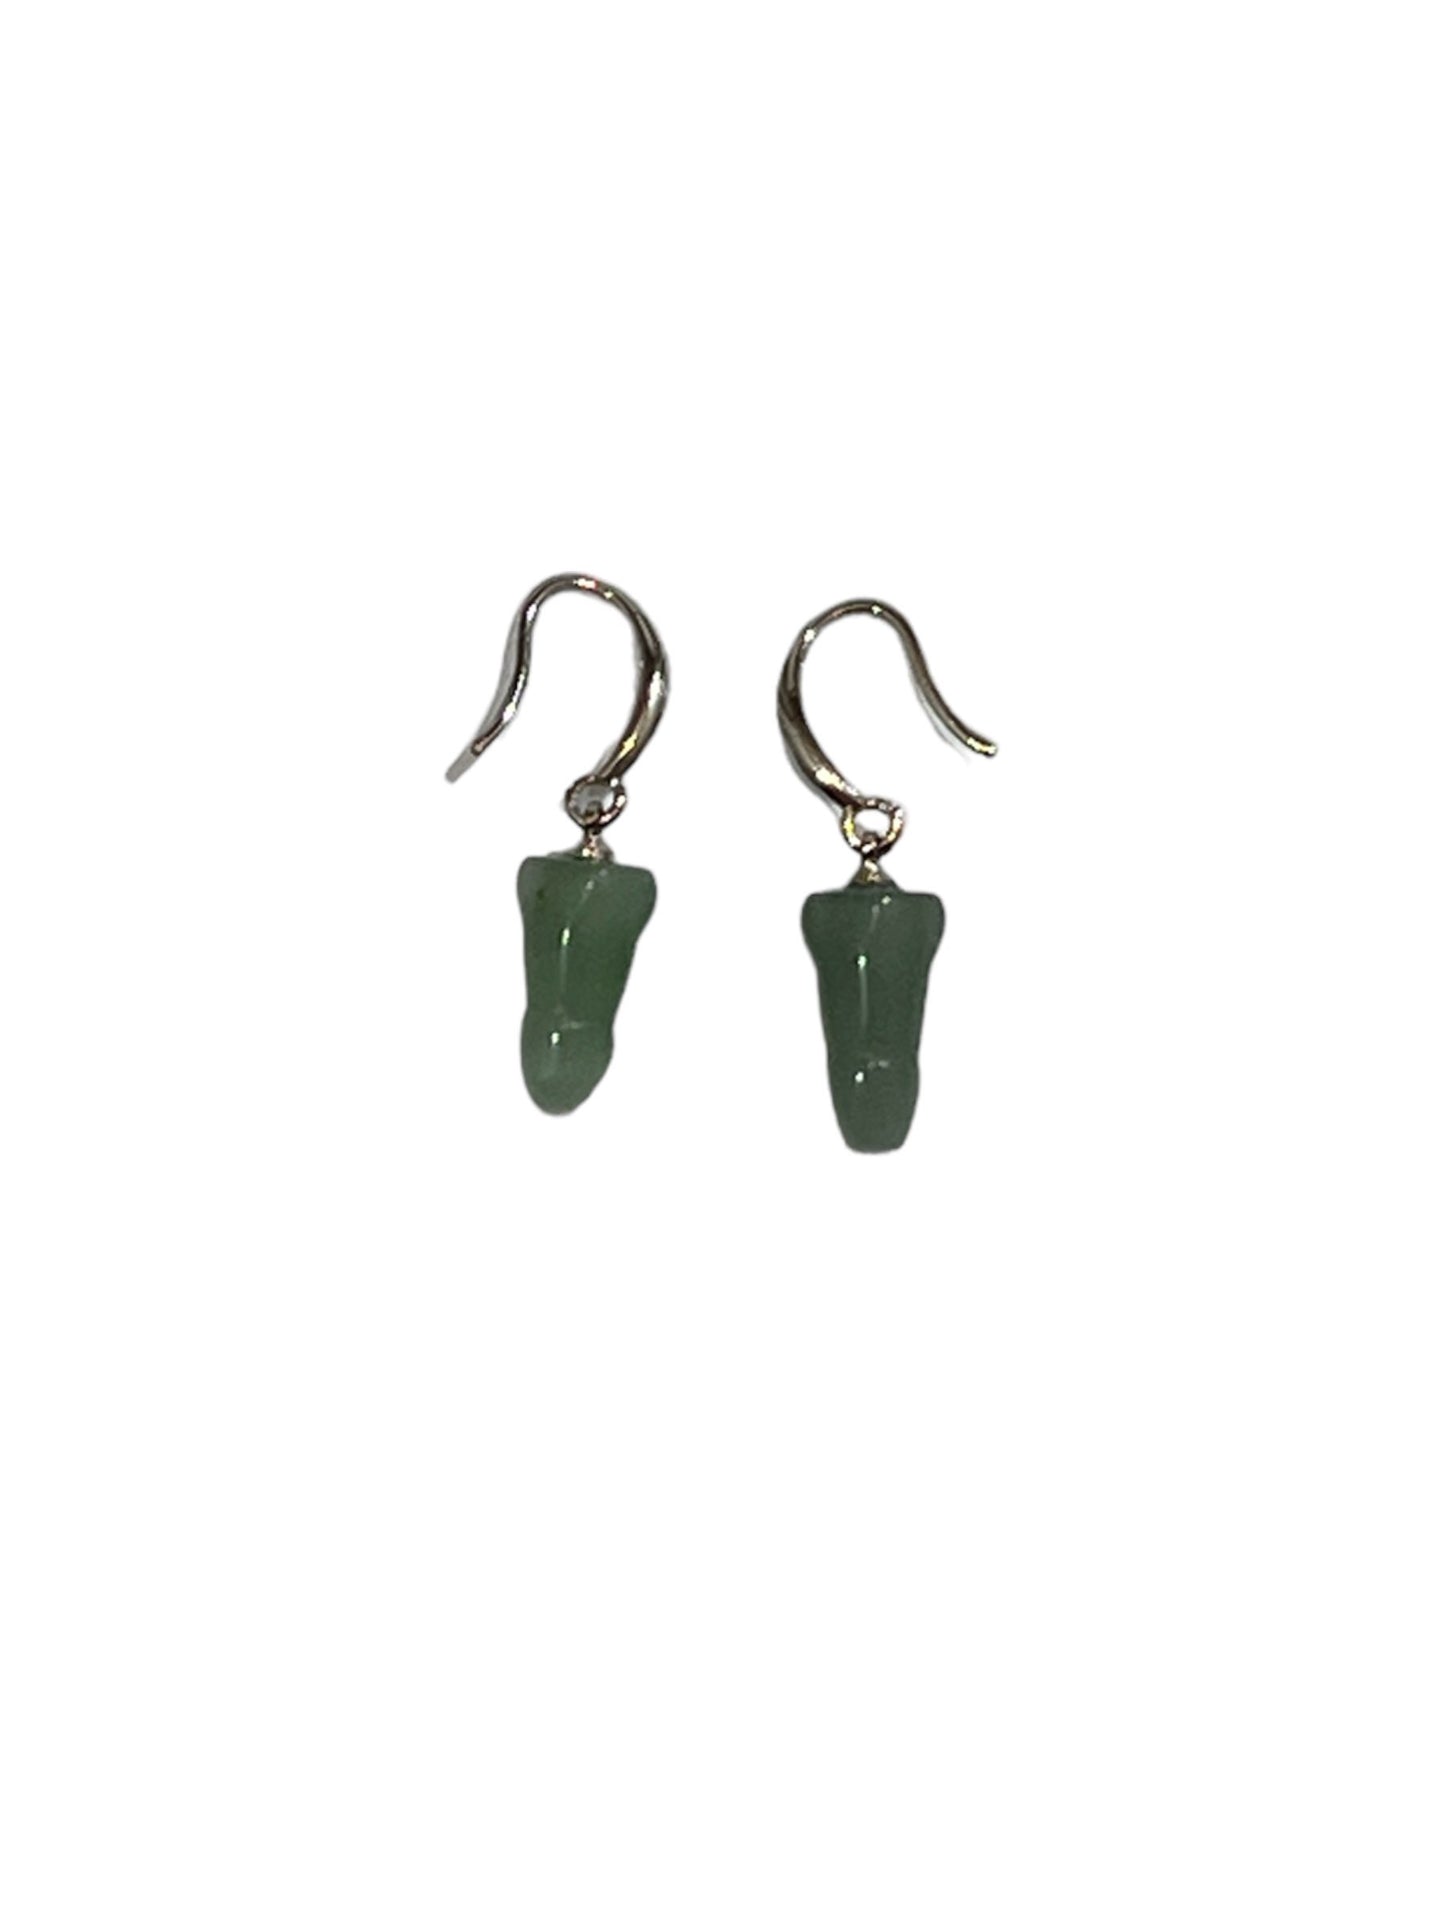 Ohrring aus grünem Aventurin. Wunderschöne grüne Ohrringe in Form eines Hahns, geeignet für Männer und Frauen.